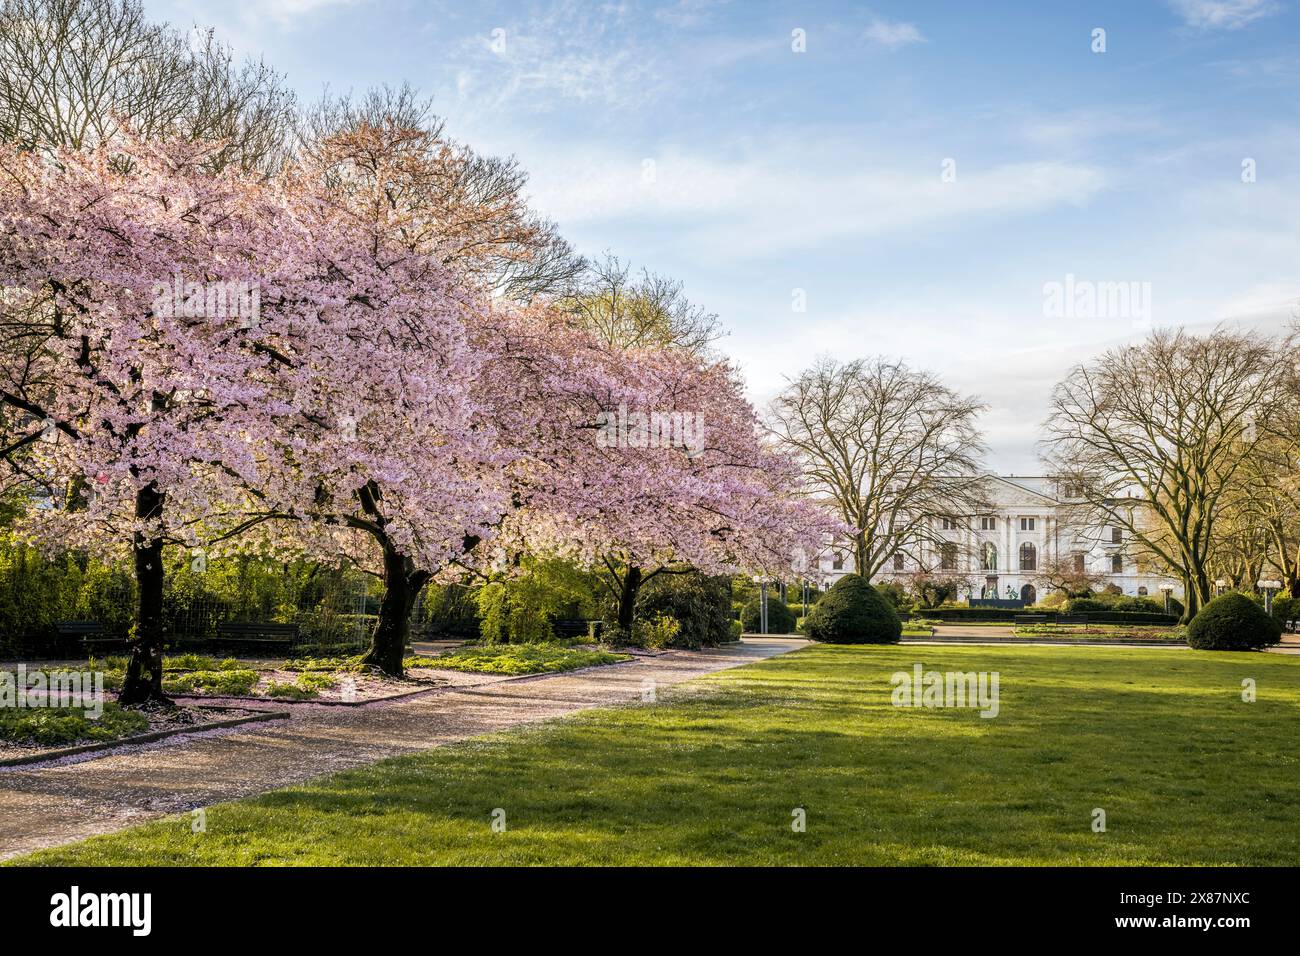 Germany, Hamburg, Cherry Blossoms in Altona park Stock Photo